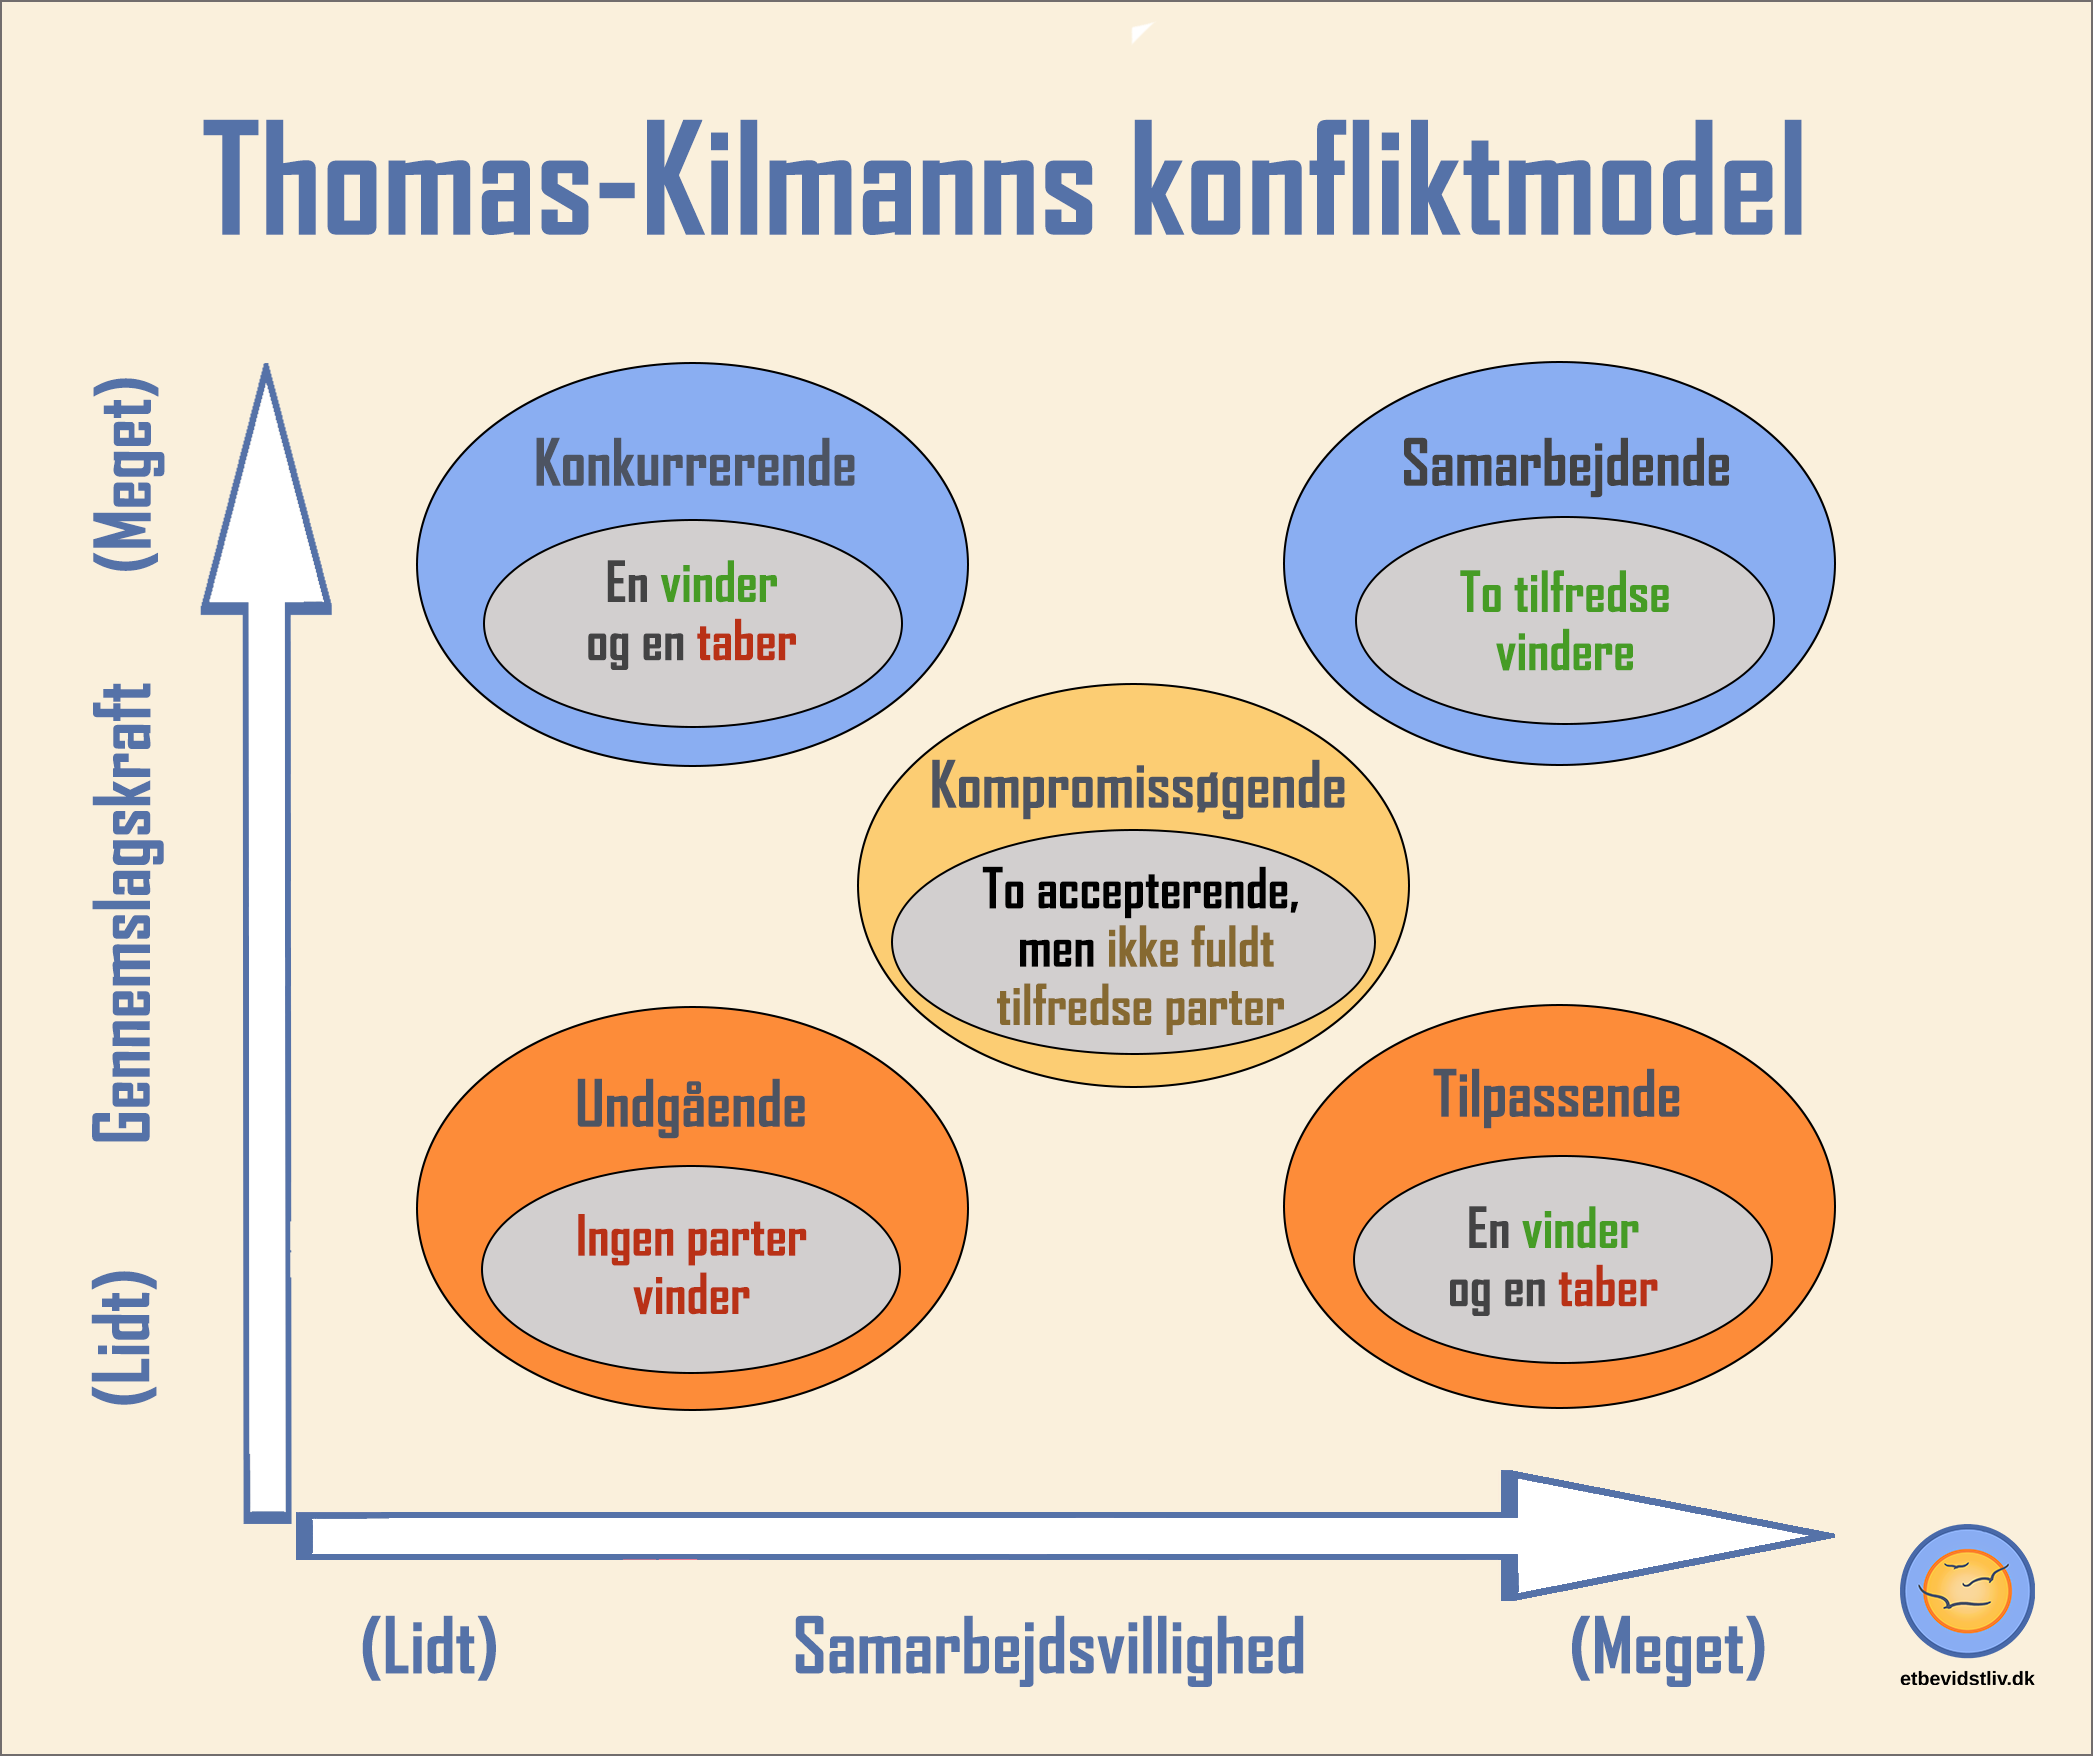 Thomas-Kilmanns konflikt model over de fem typer adfærd i en konflikt.